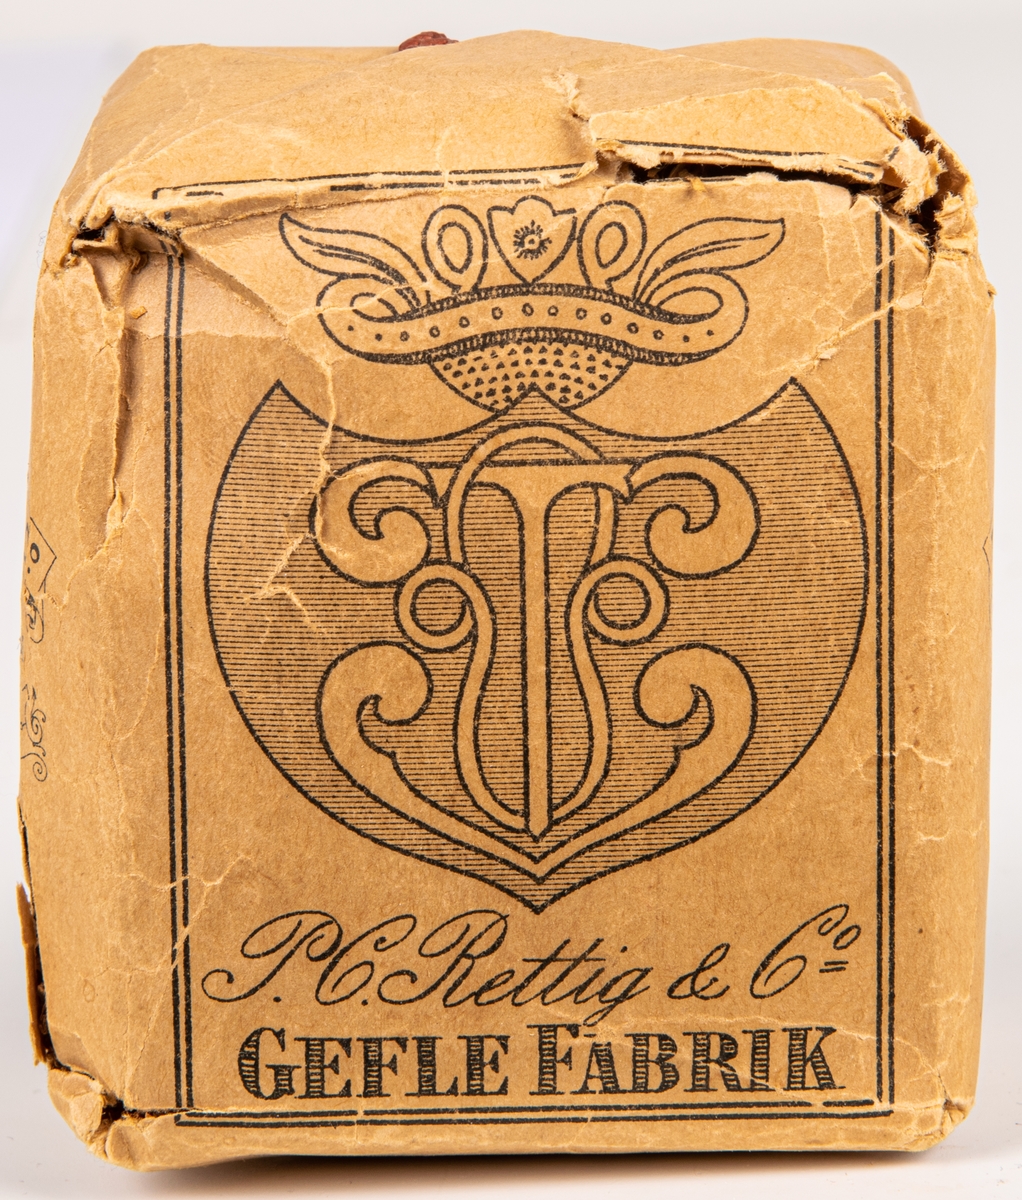 Tobakspaket, av märket: "Gefle wapen" från  Rettigska fabriken.